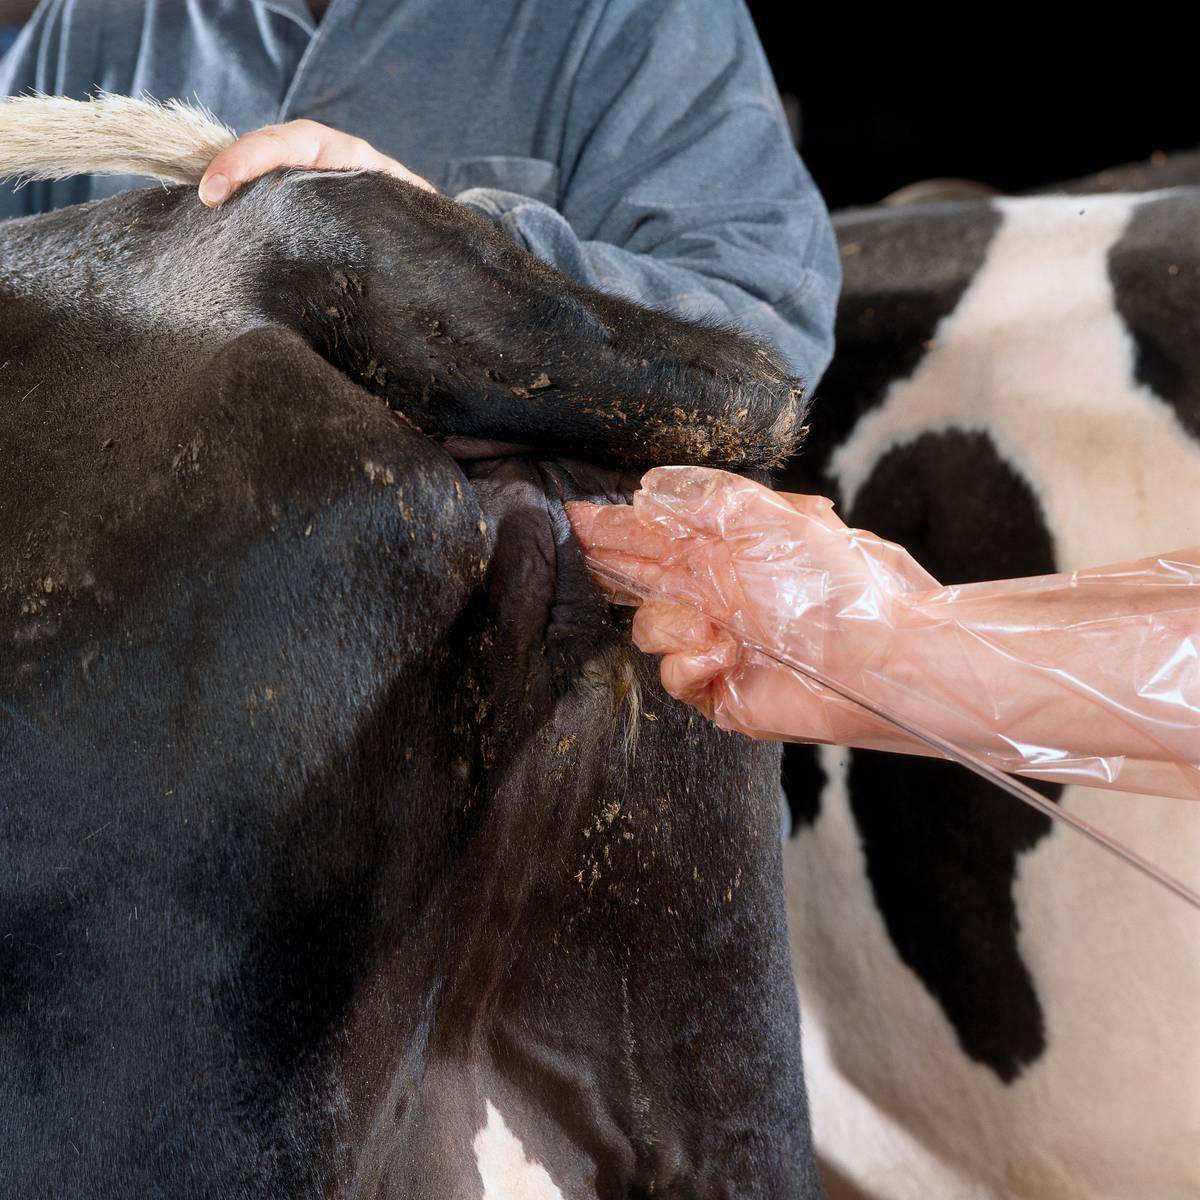 Ветеринария крс | лечение эндометритов у коров